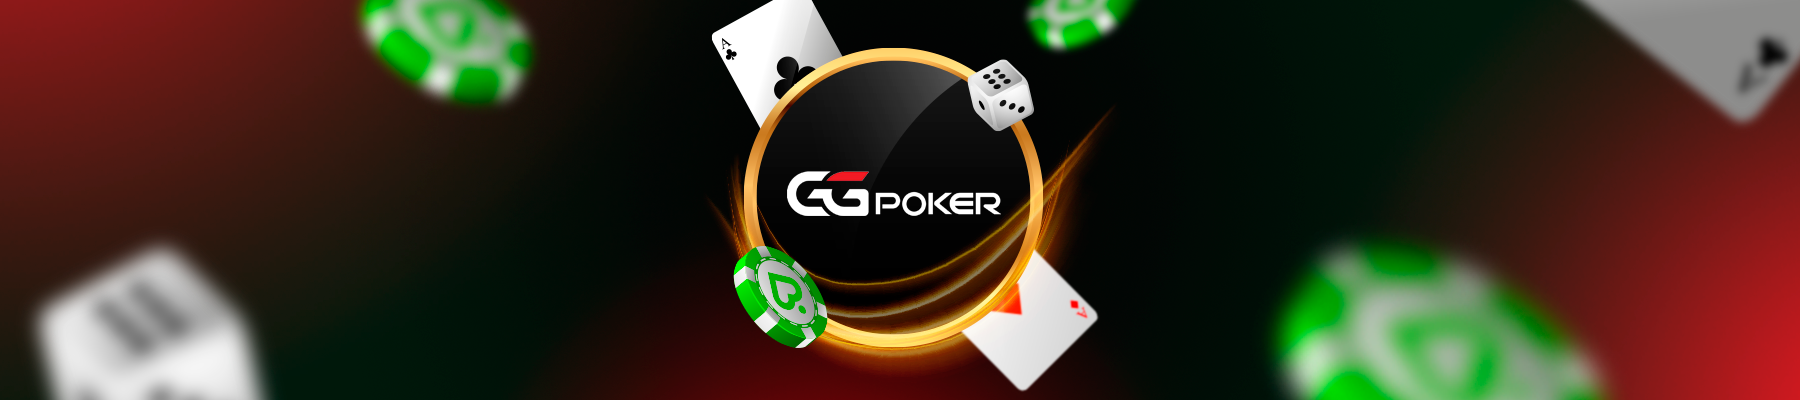 Как найти правильное pokerdom casino для вашей конкретной услуги